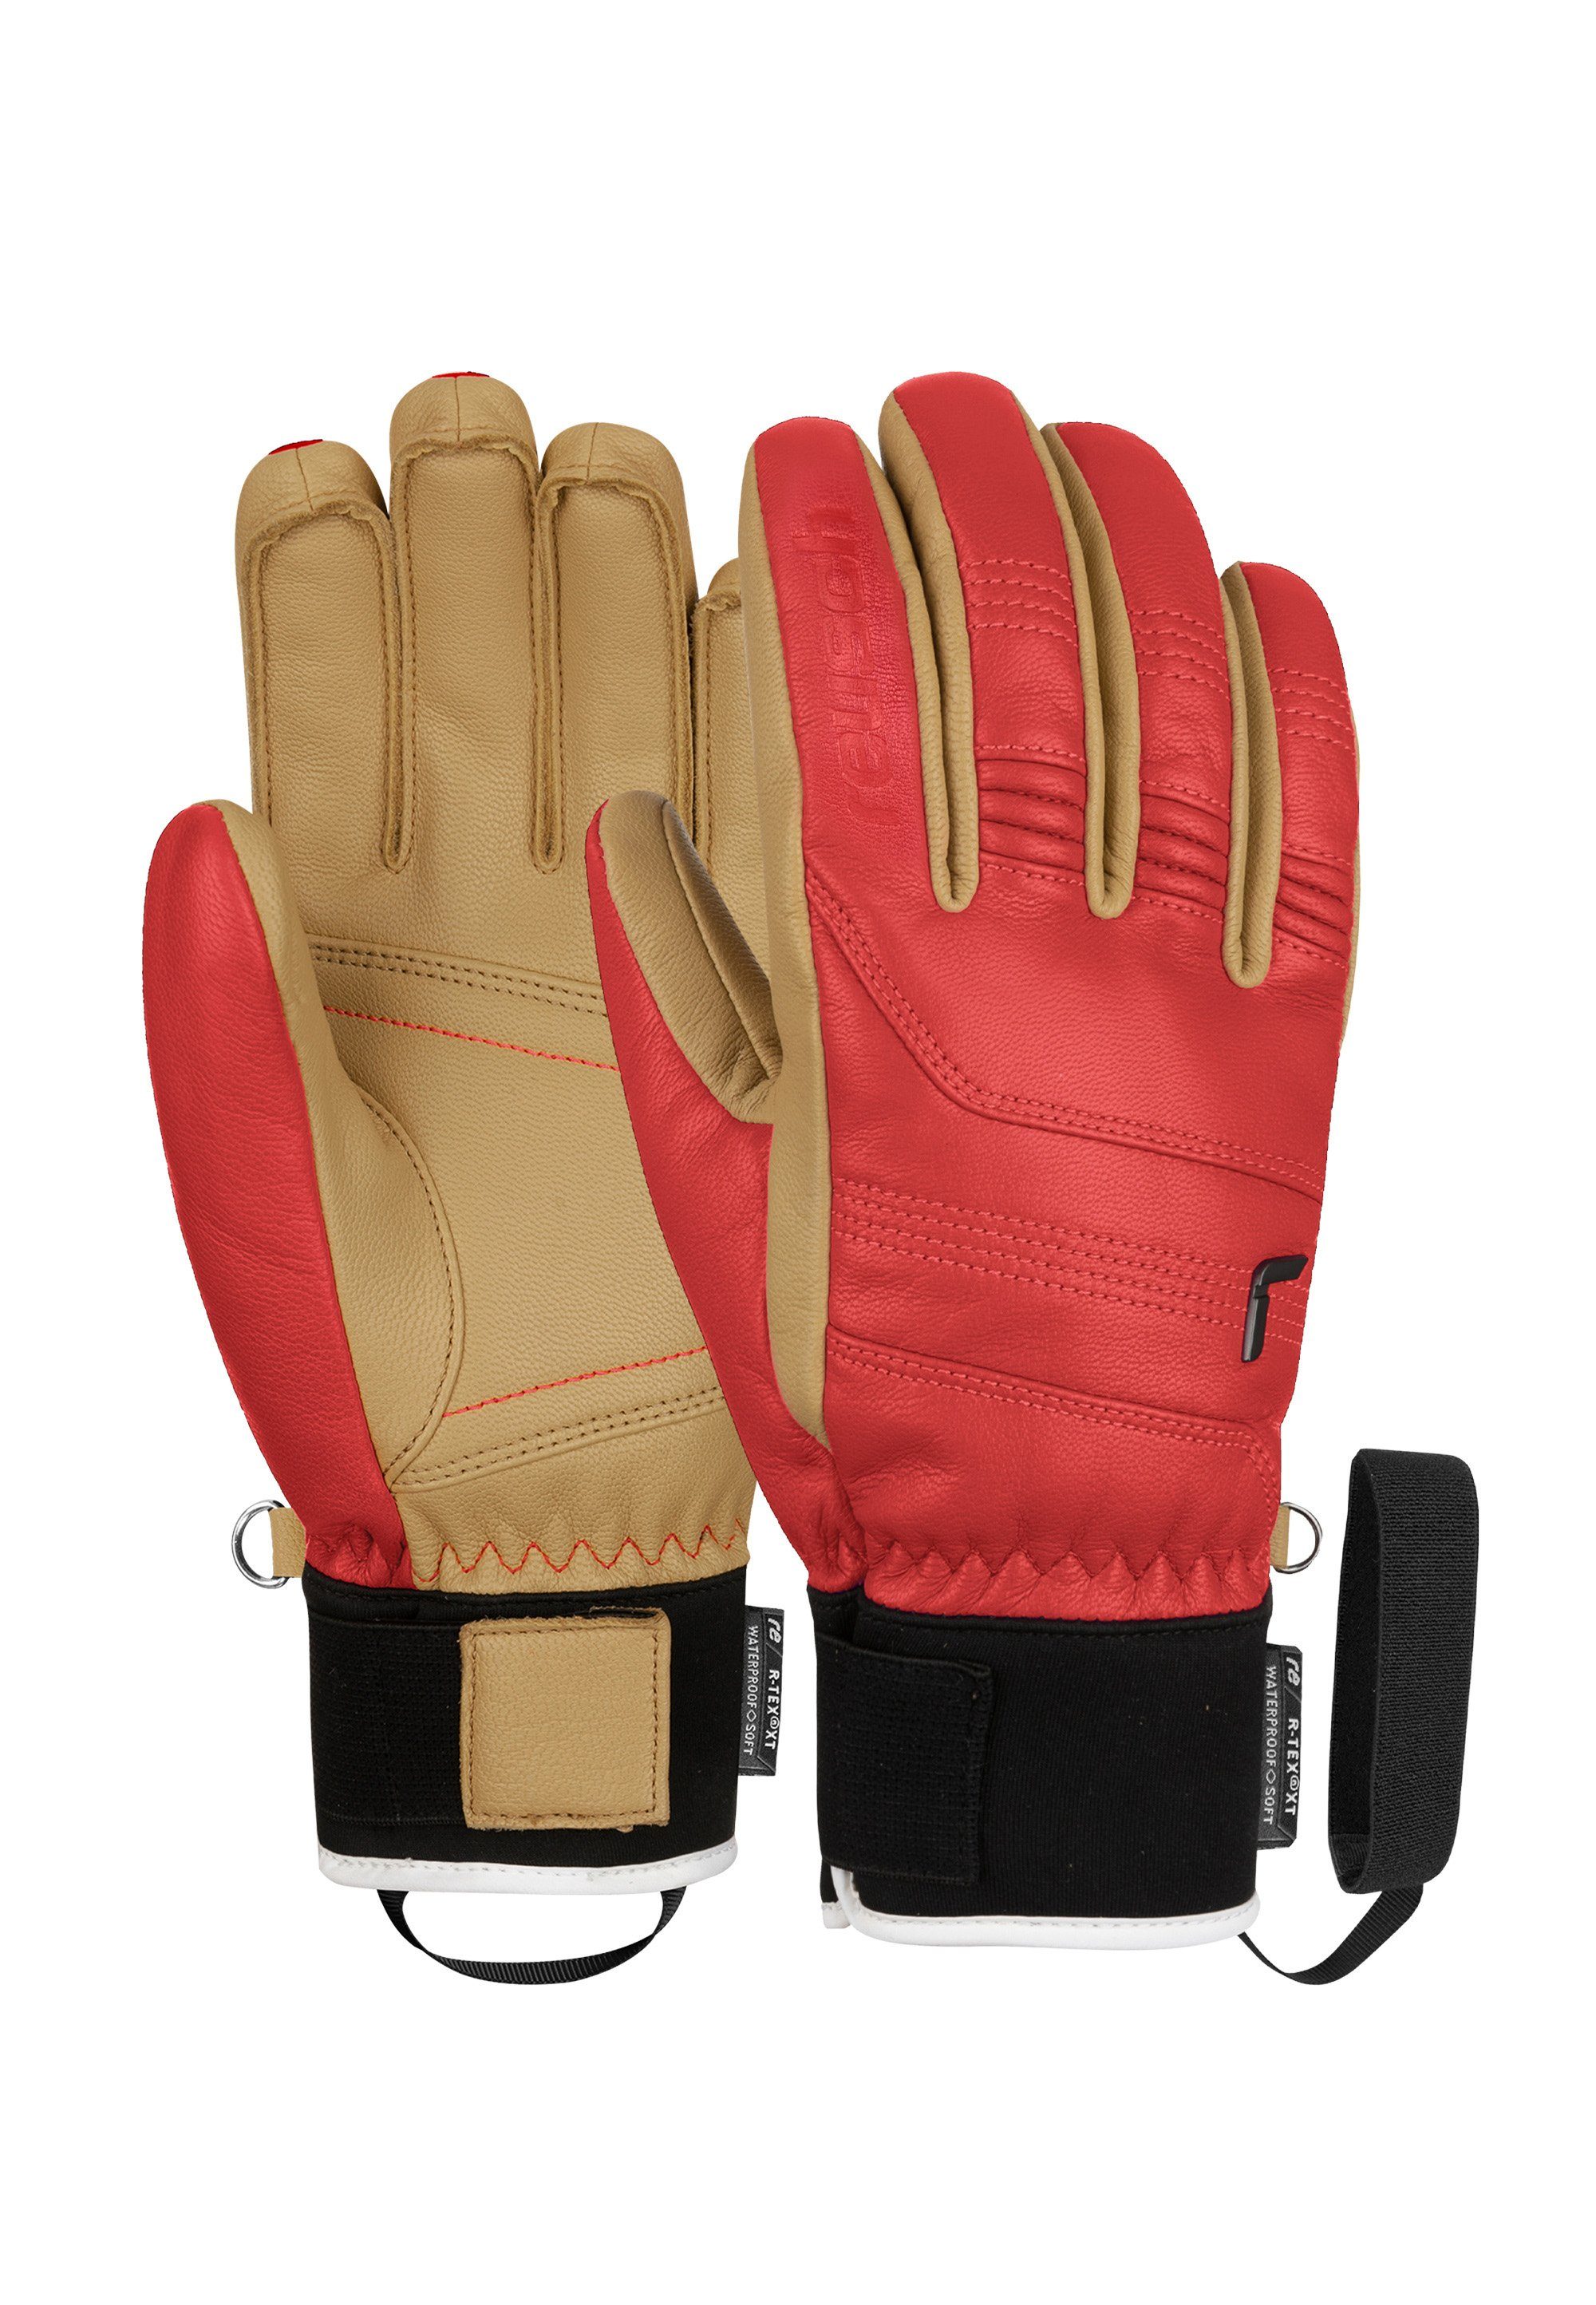 Reusch Skihandschuhe Highland R-TEX® XT aus wasserdichtem und atmungsaktivem Material rot-beige | Handschuhe